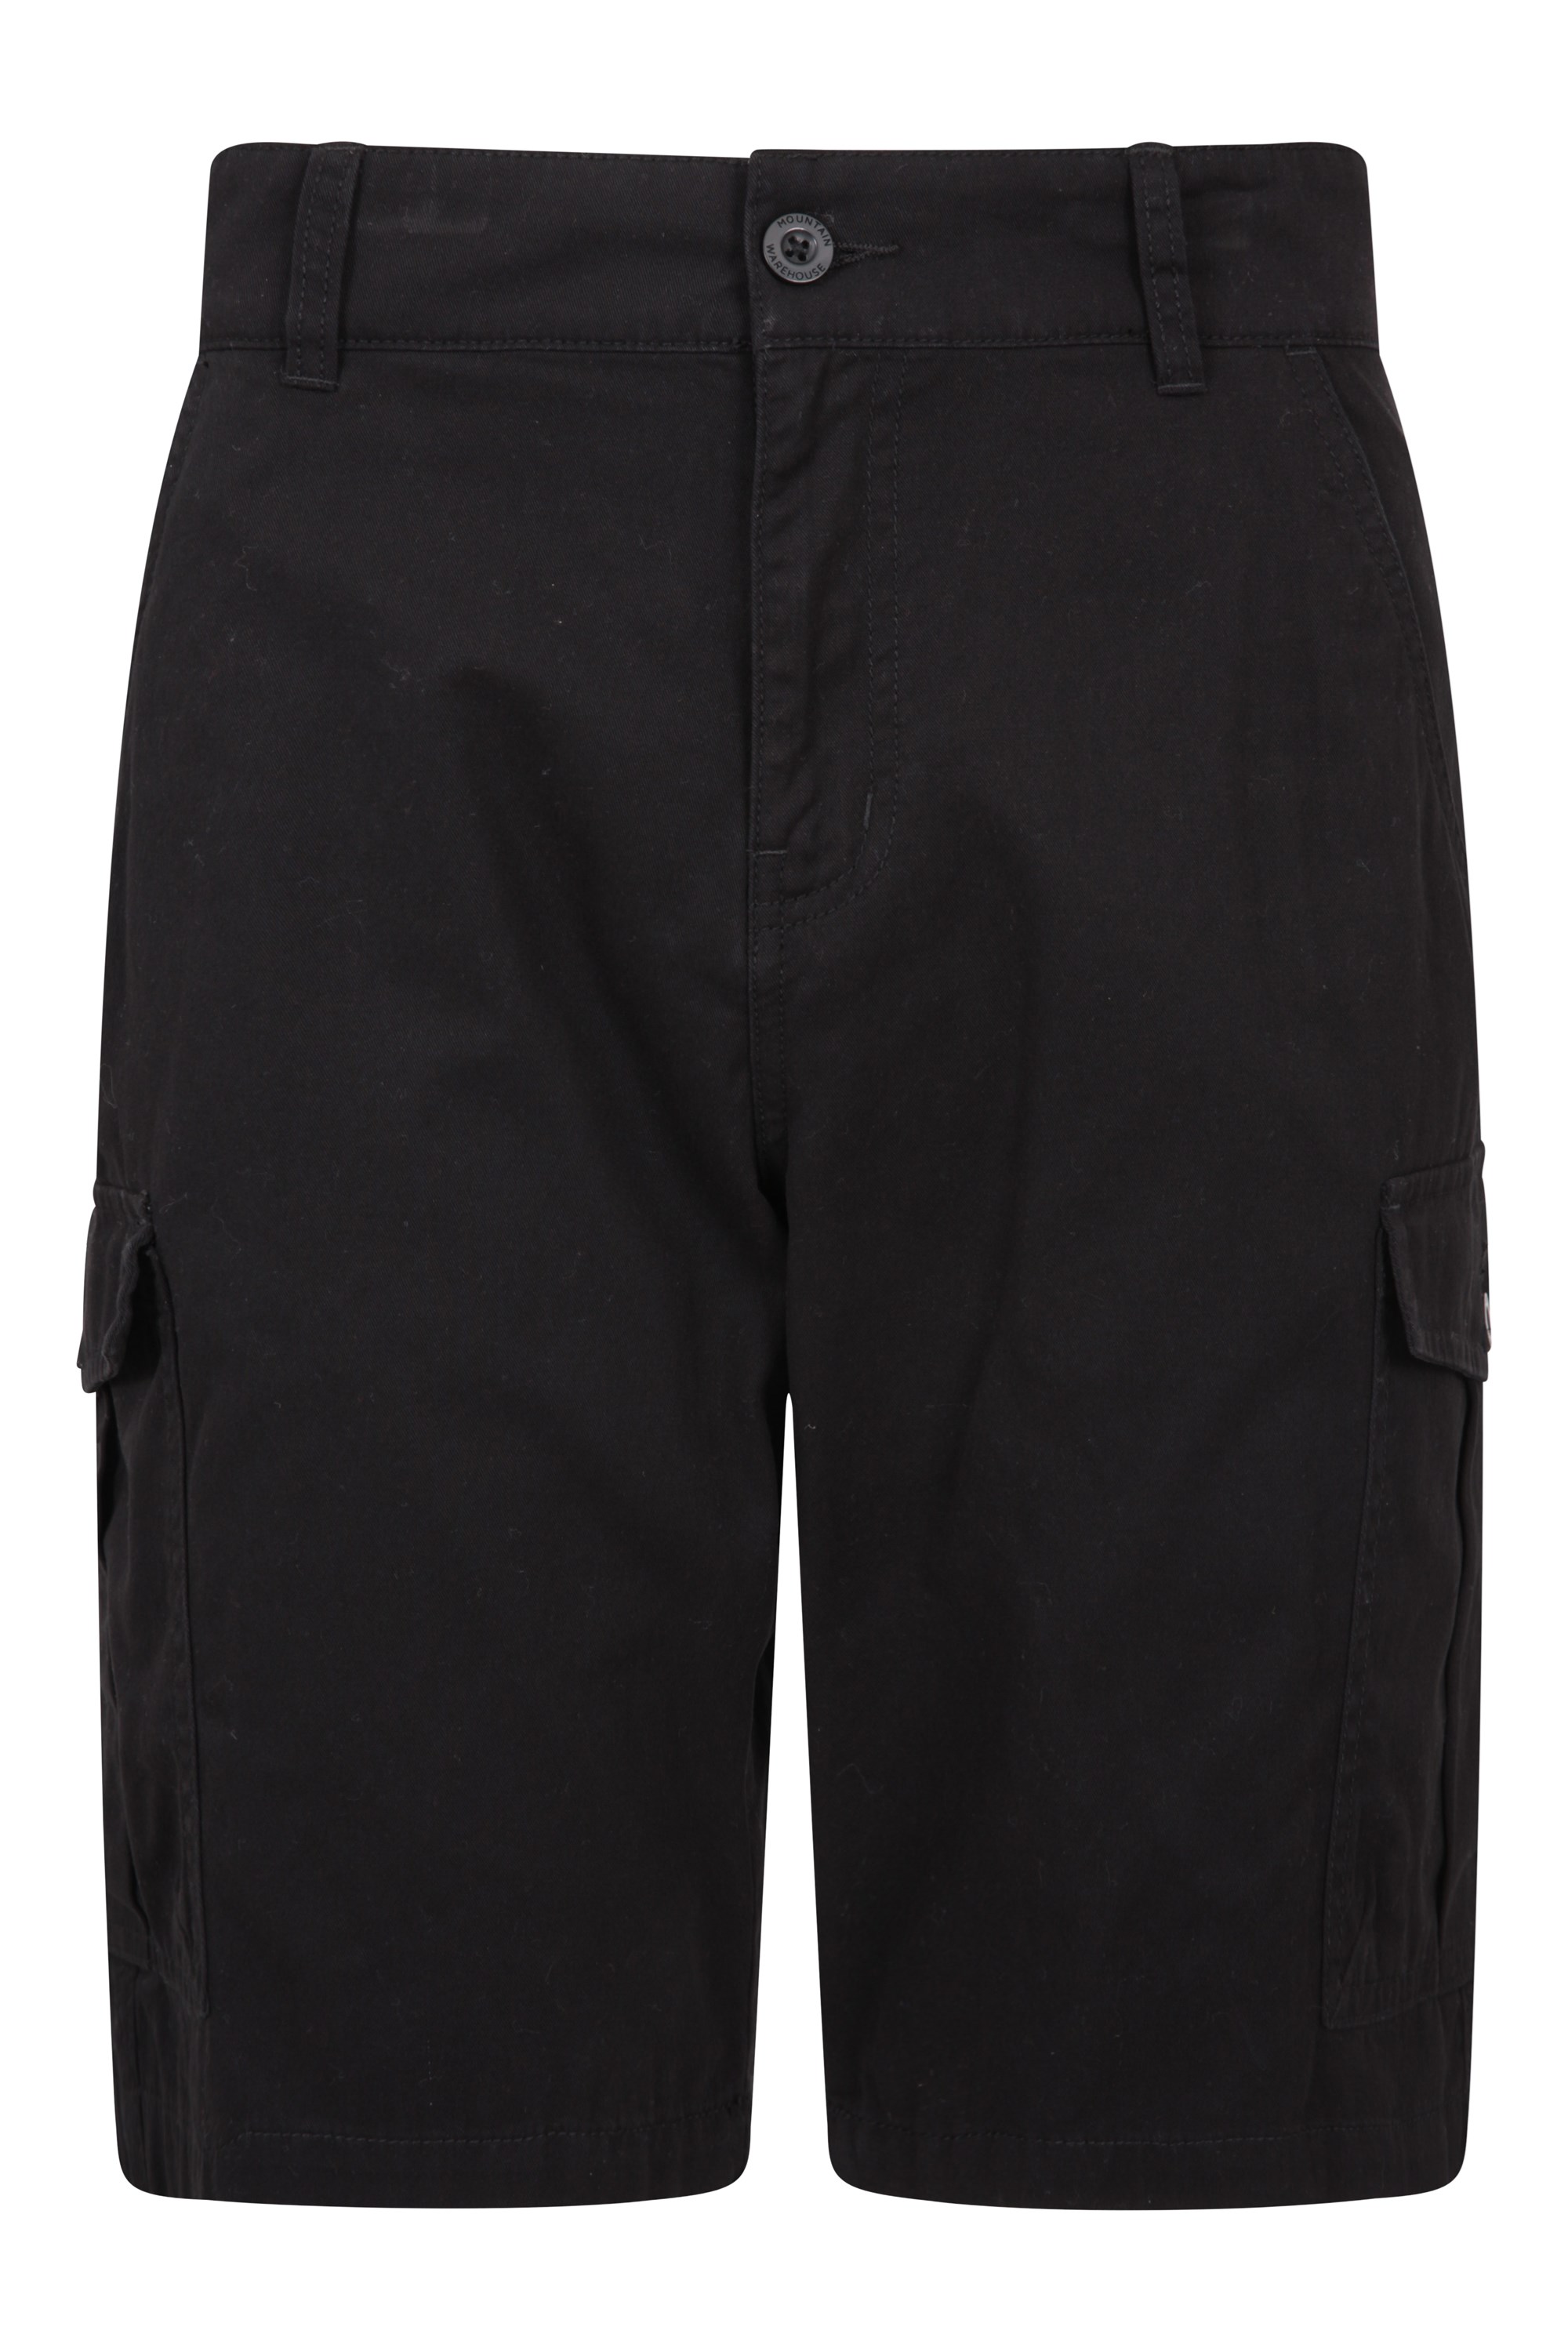 Mountain Warehouse Lakeside II Womens Shorts Summer Short Pants